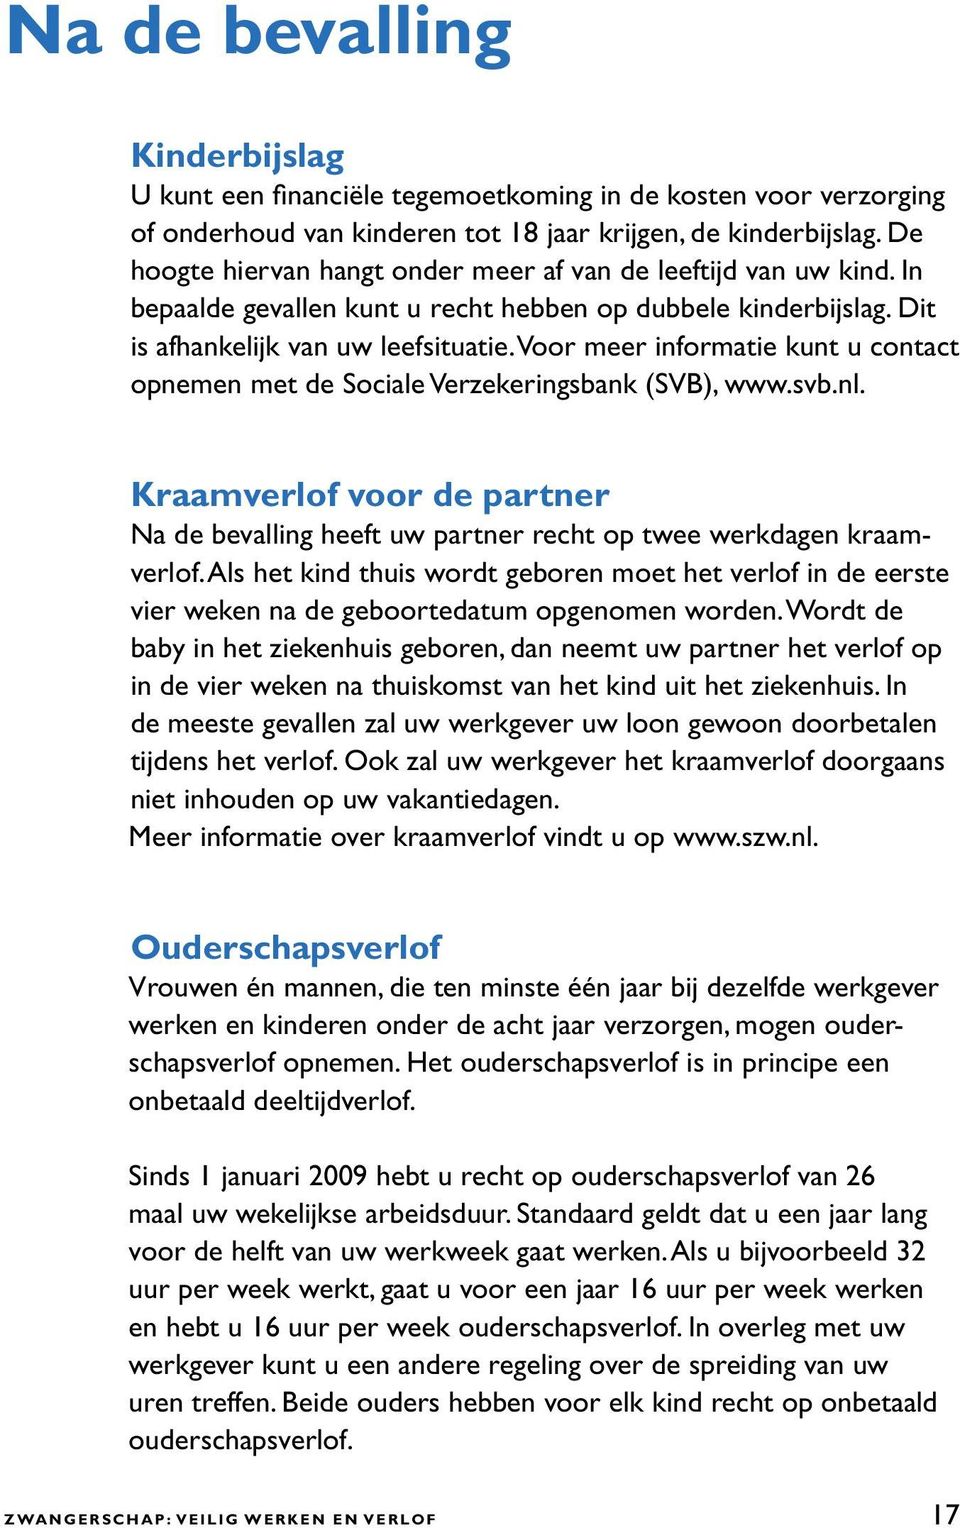 Voor meer informatie kunt u contact opnemen met de Sociale Verzekeringsbank (SVB), www.svb.nl. Kraamverlof voor de partner Na de bevalling heeft uw partner recht op twee werkdagen kraamverlof.